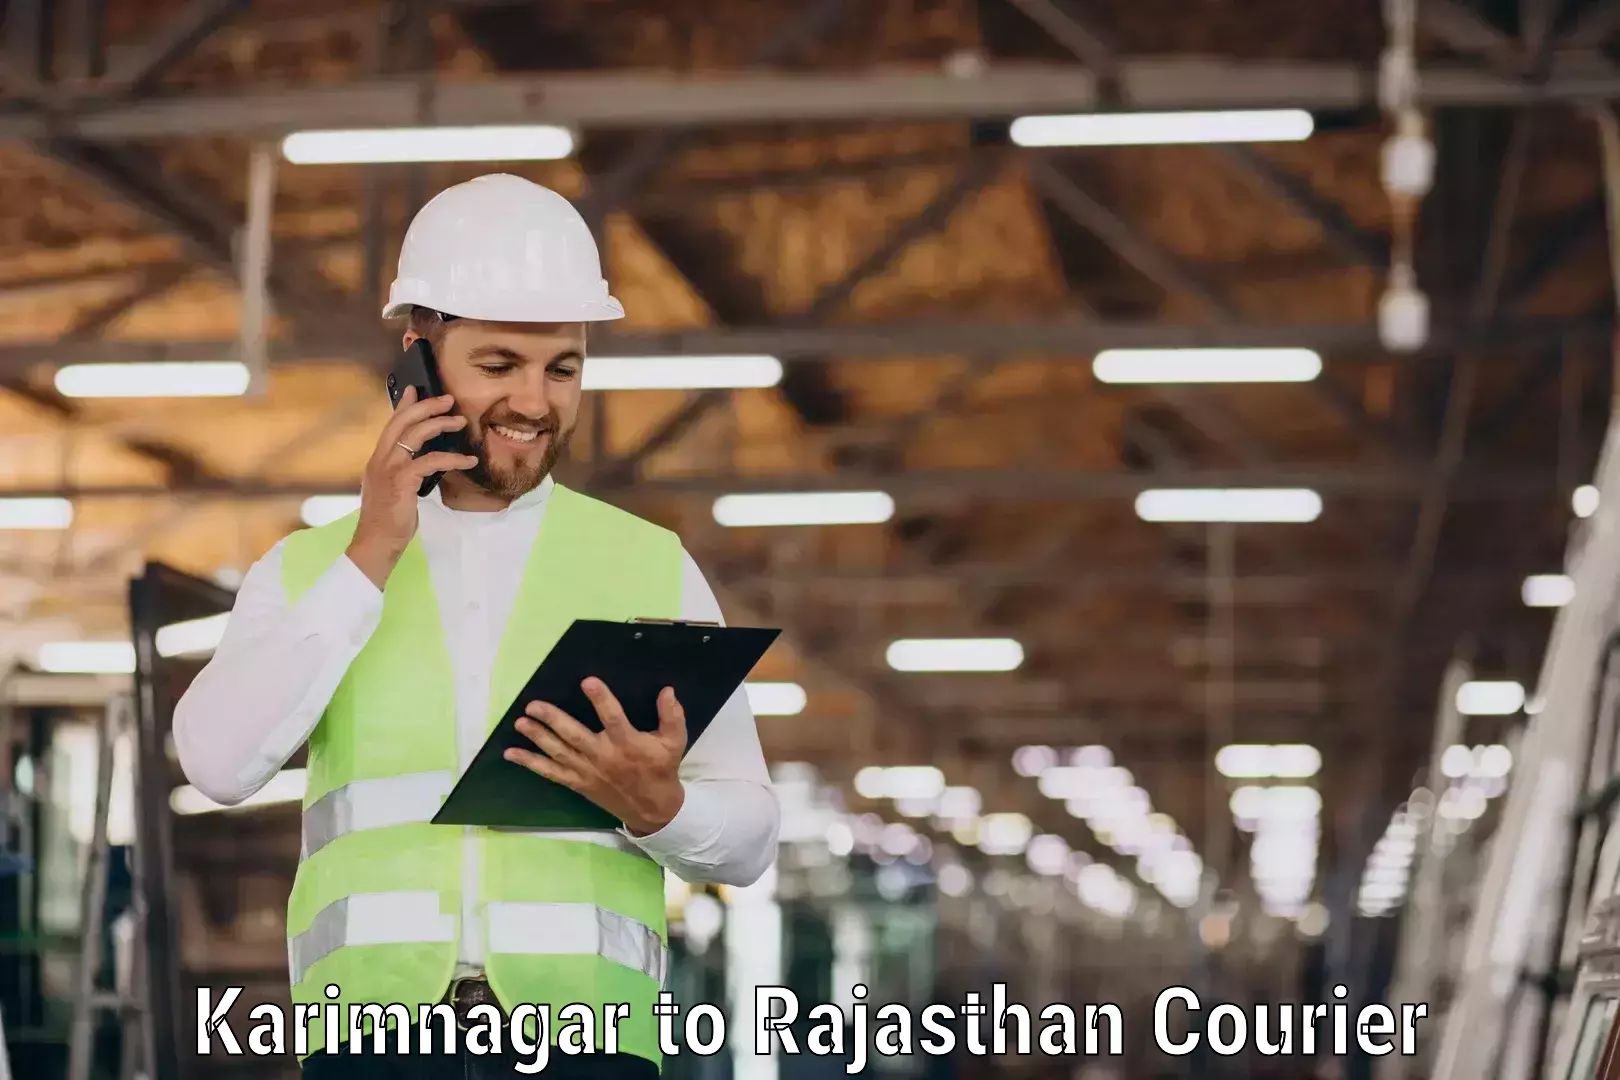 Comprehensive delivery network Karimnagar to Suratgarh